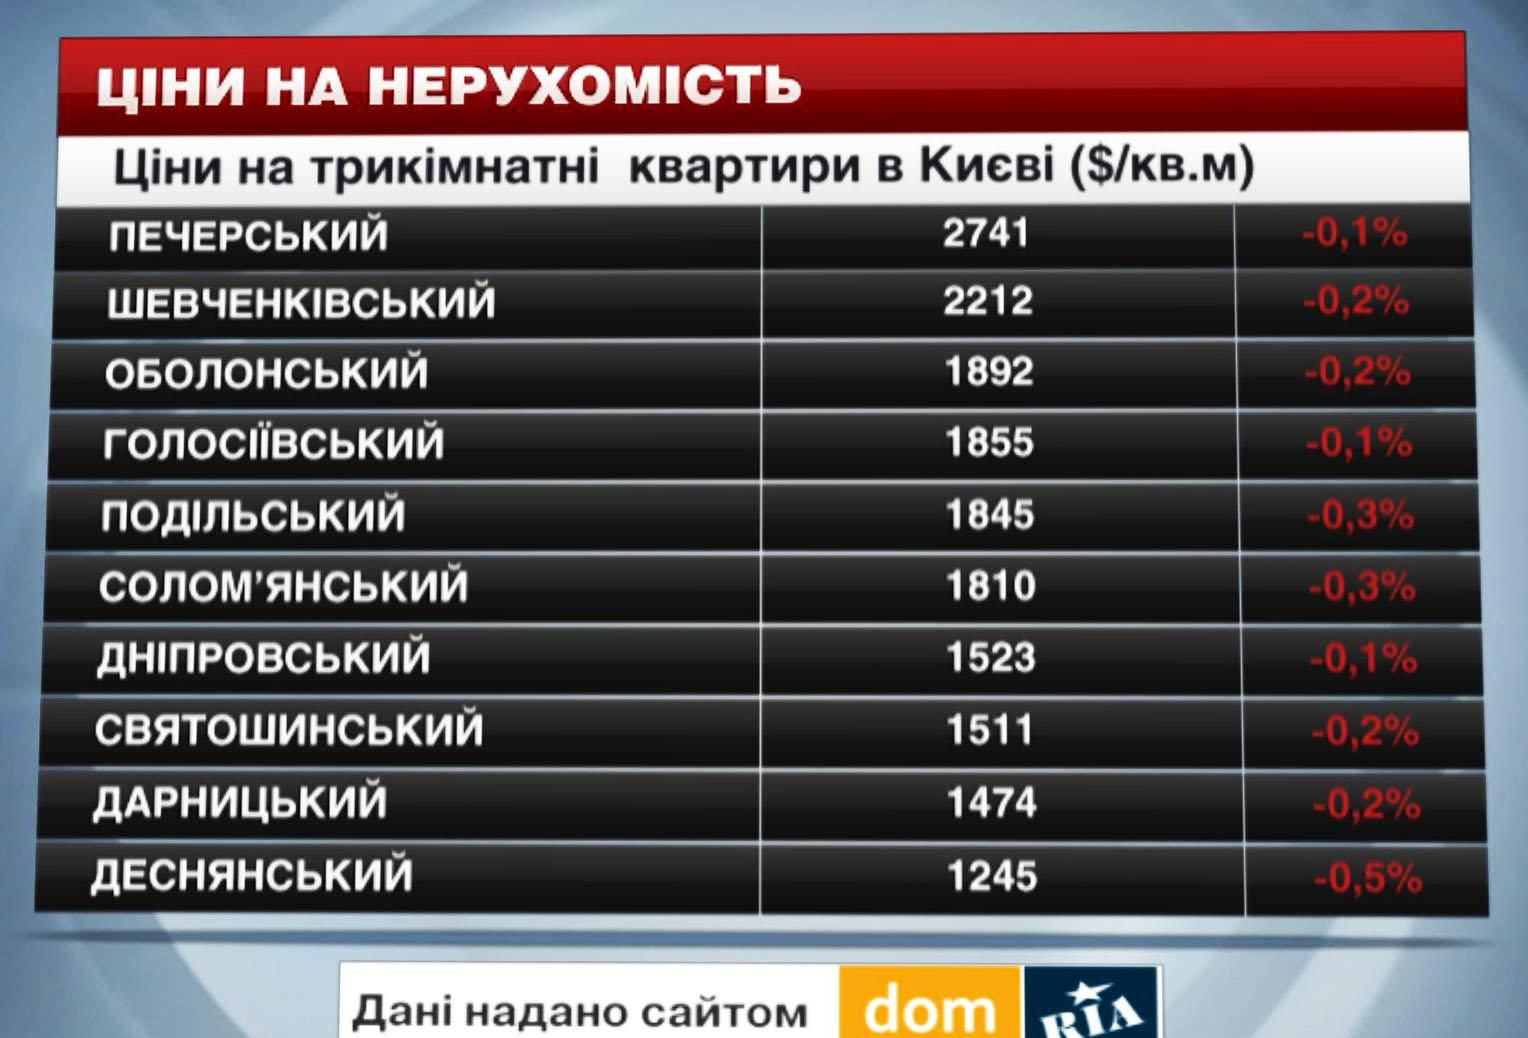 Цены на недвижимость в Киеве - 25 октября 2014 - Телеканал новин 24